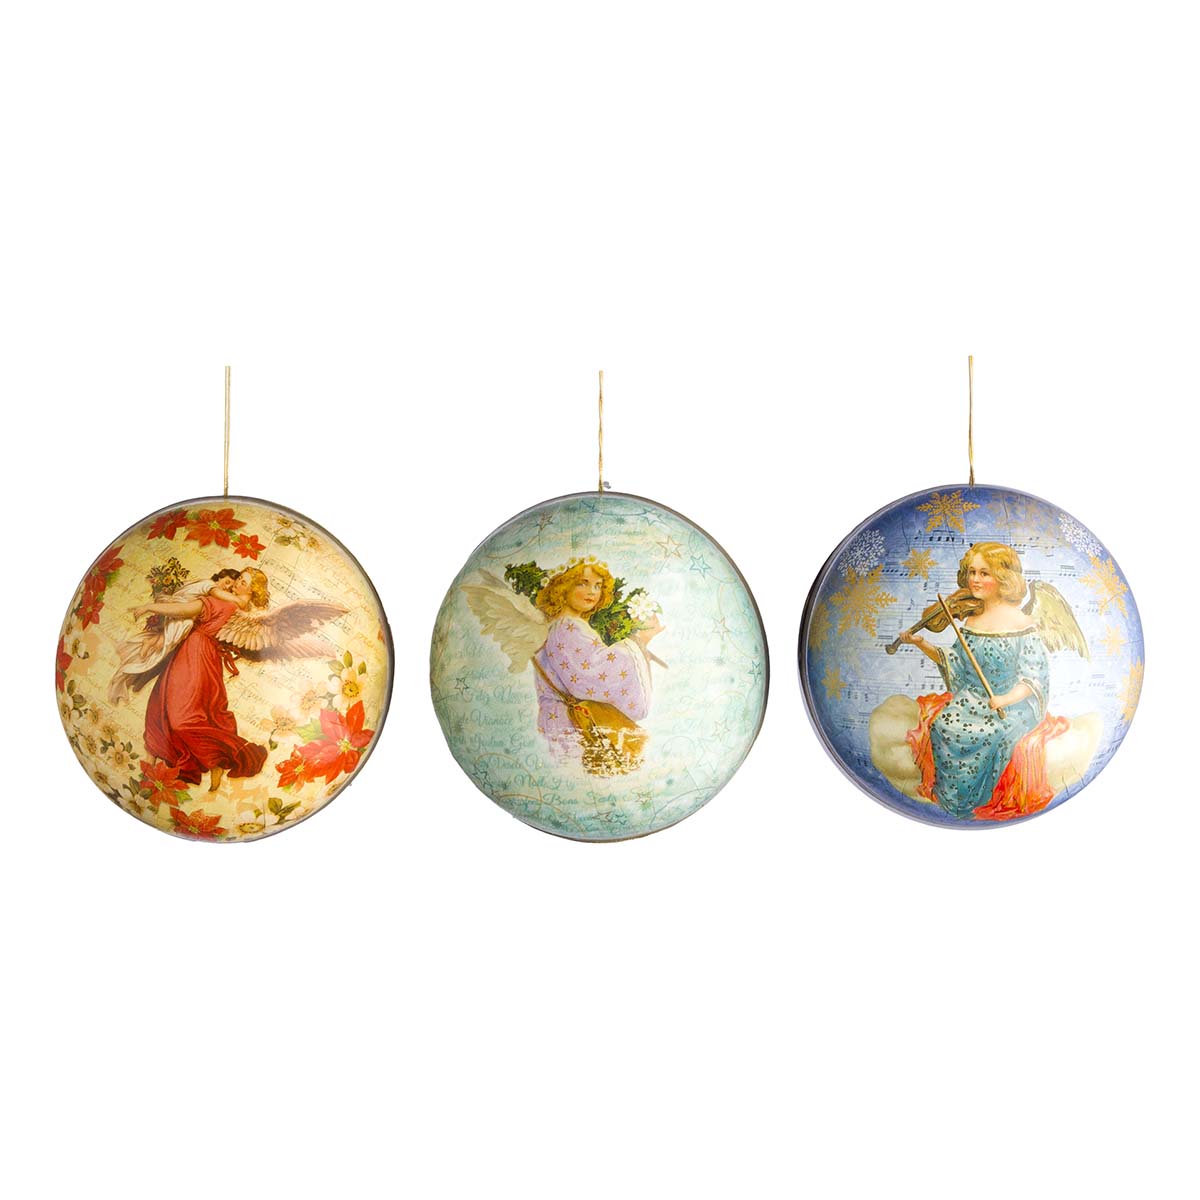 Χριστουγεννιάτικη μπάλα χάρτινη με αγγέλους (3 τεμάχια)